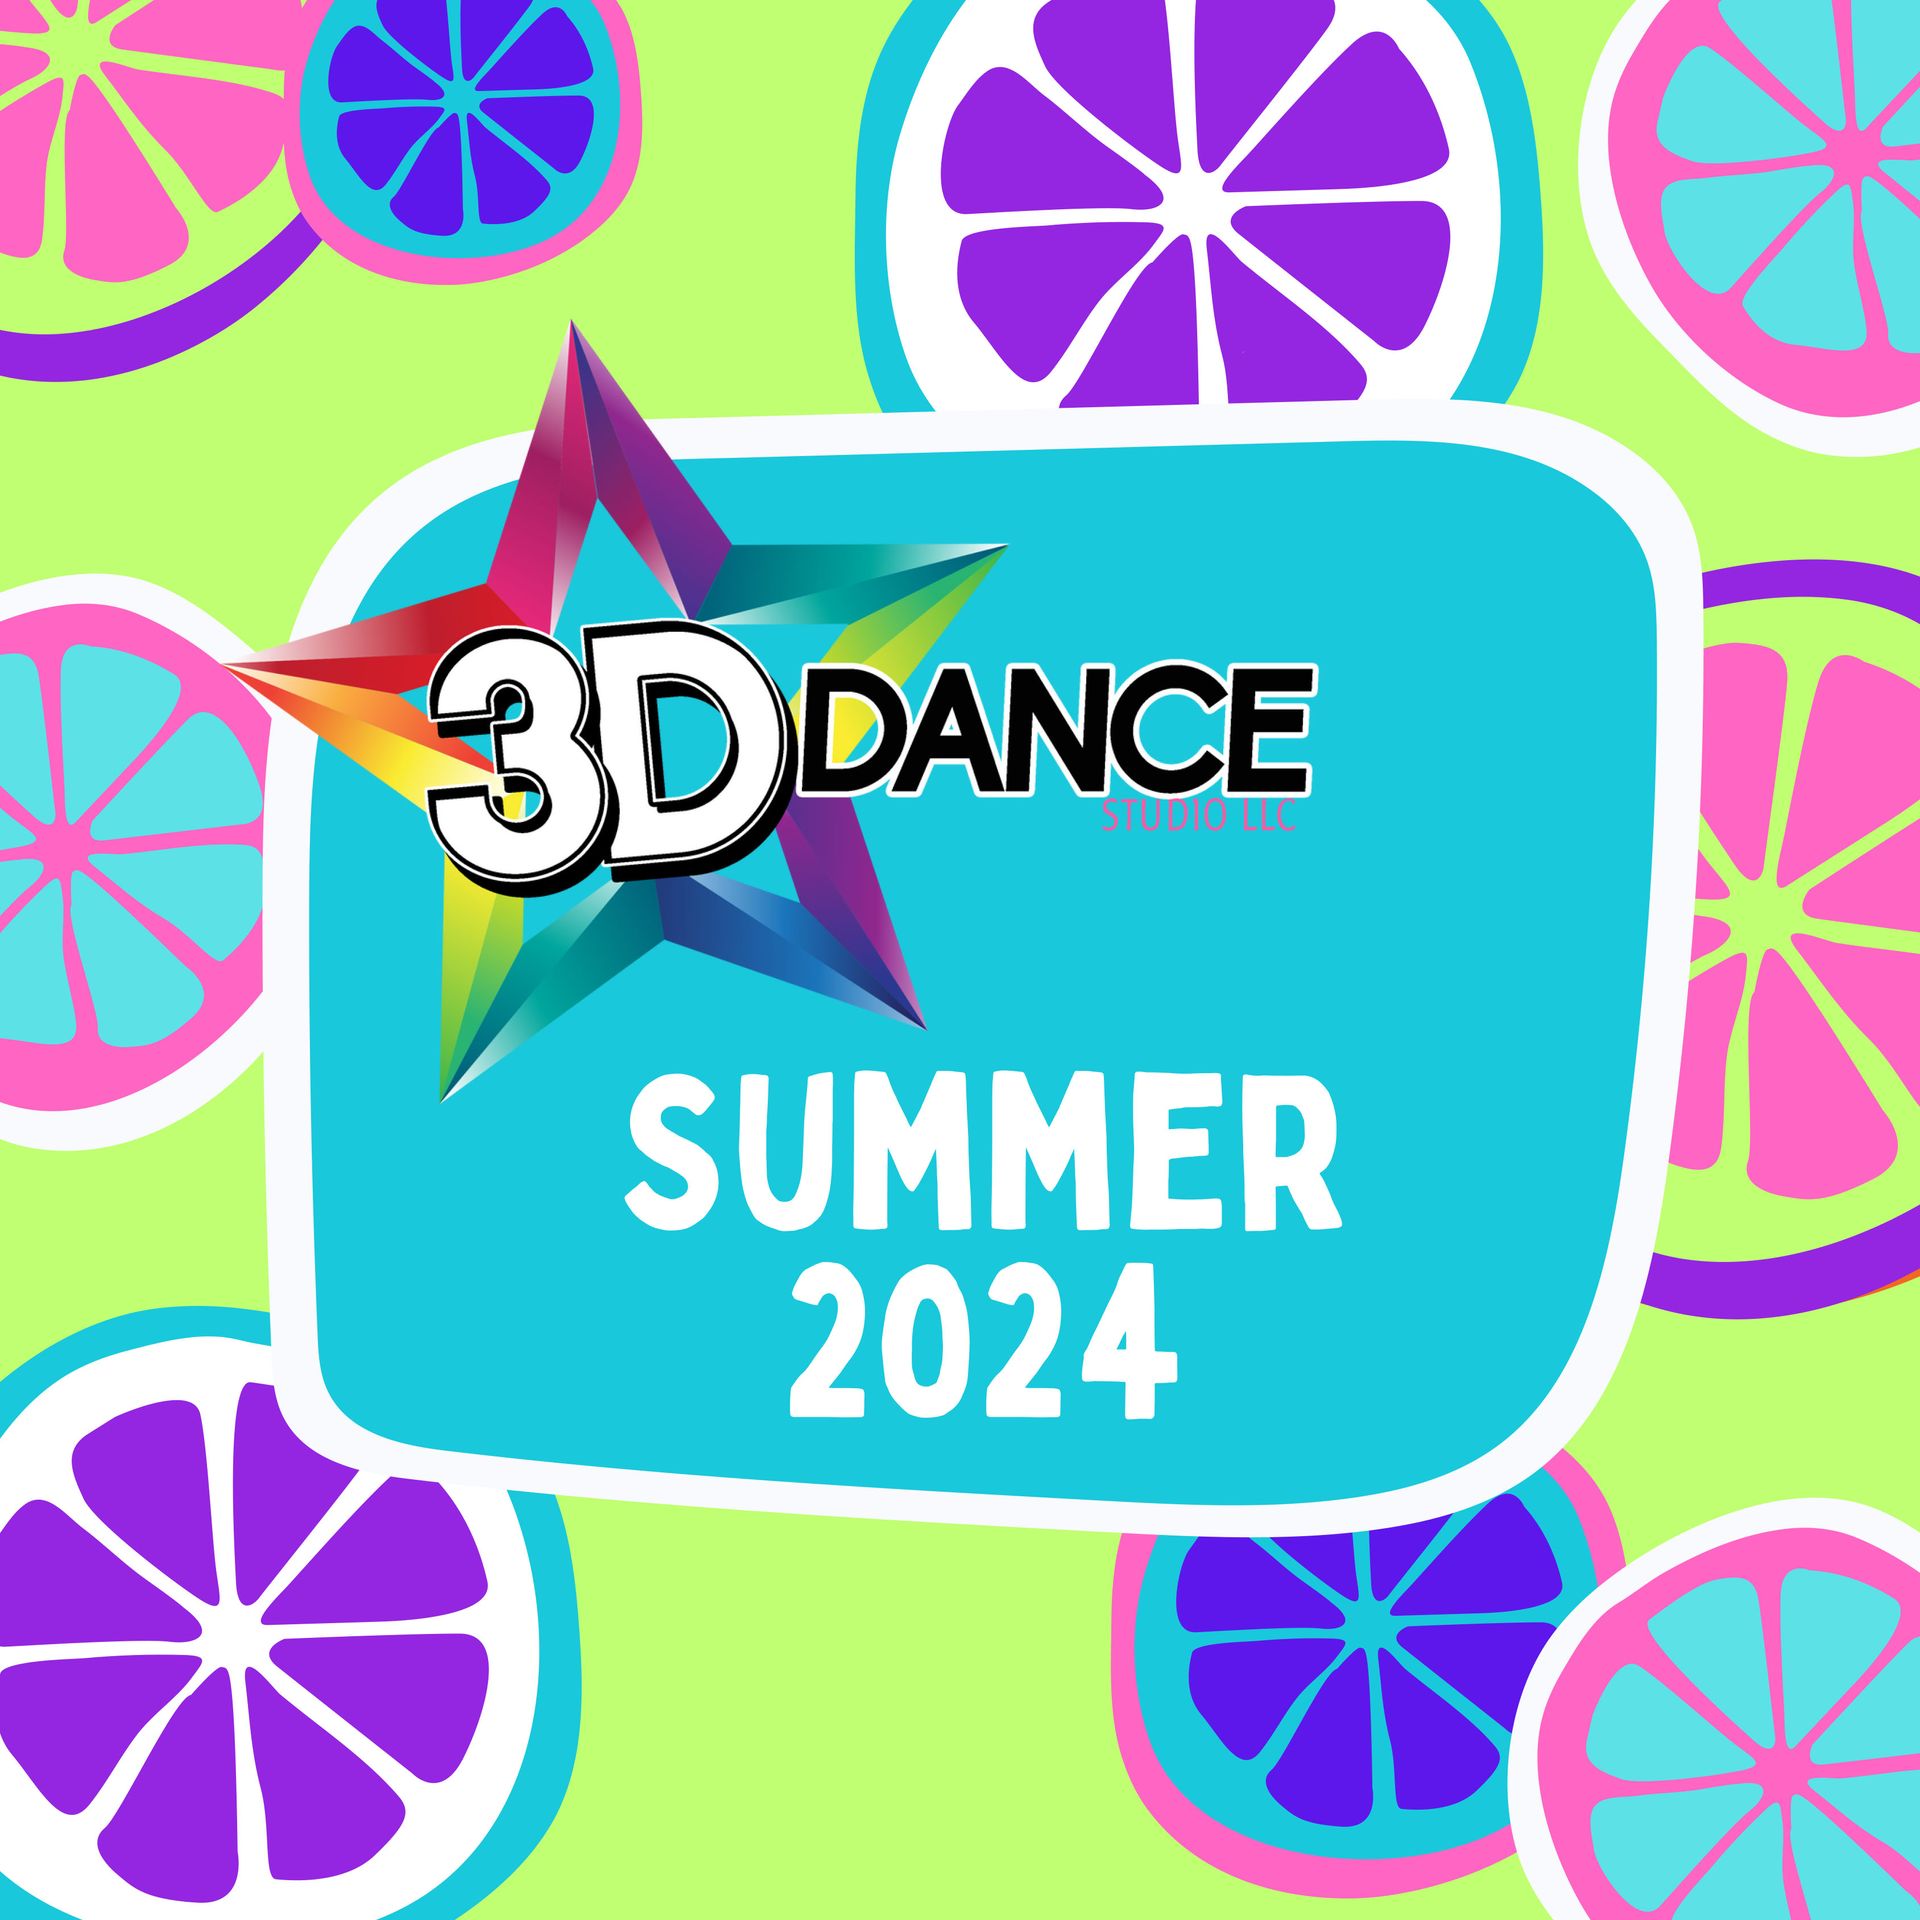 A poster for 3d dance summer 2024